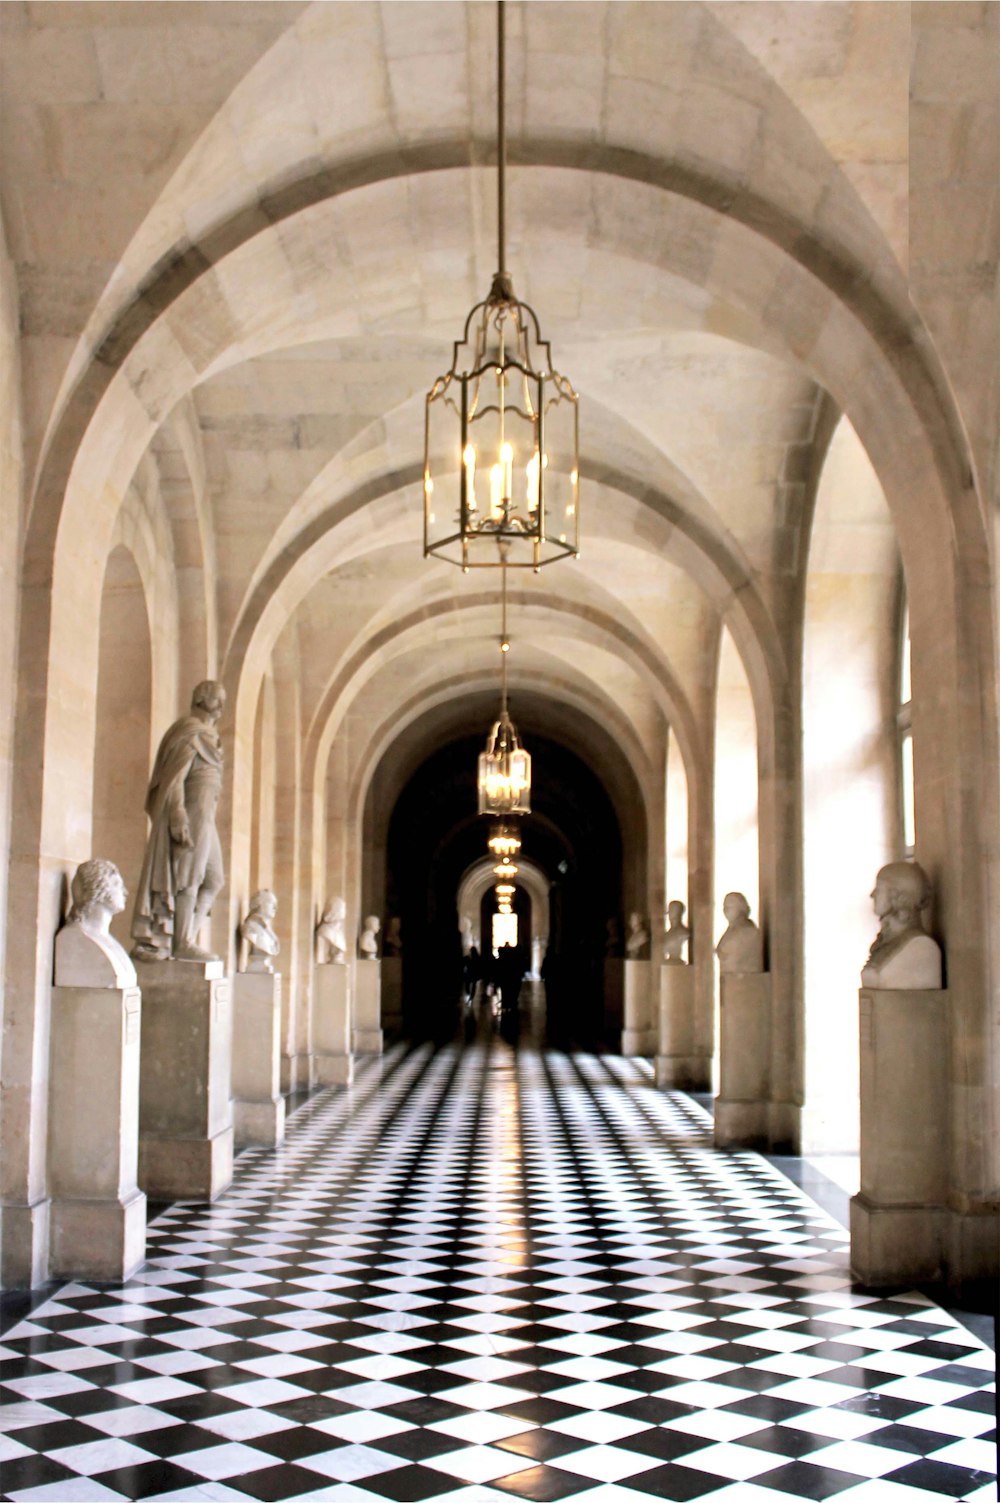 市松模様の床とシャンデリアのある廊下